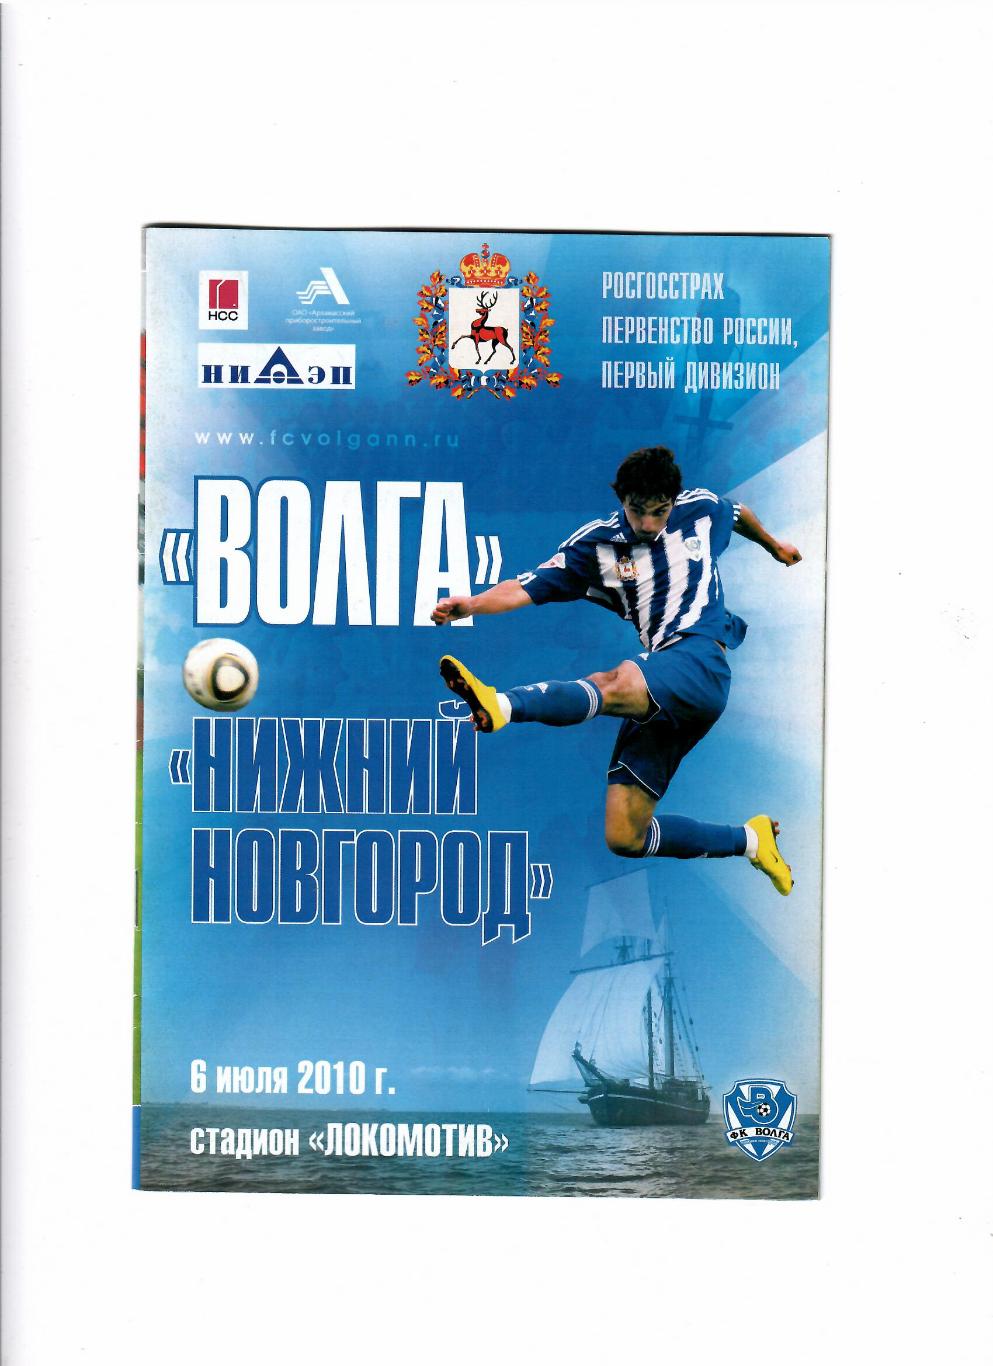 Волга-Нижний Новгород 2010